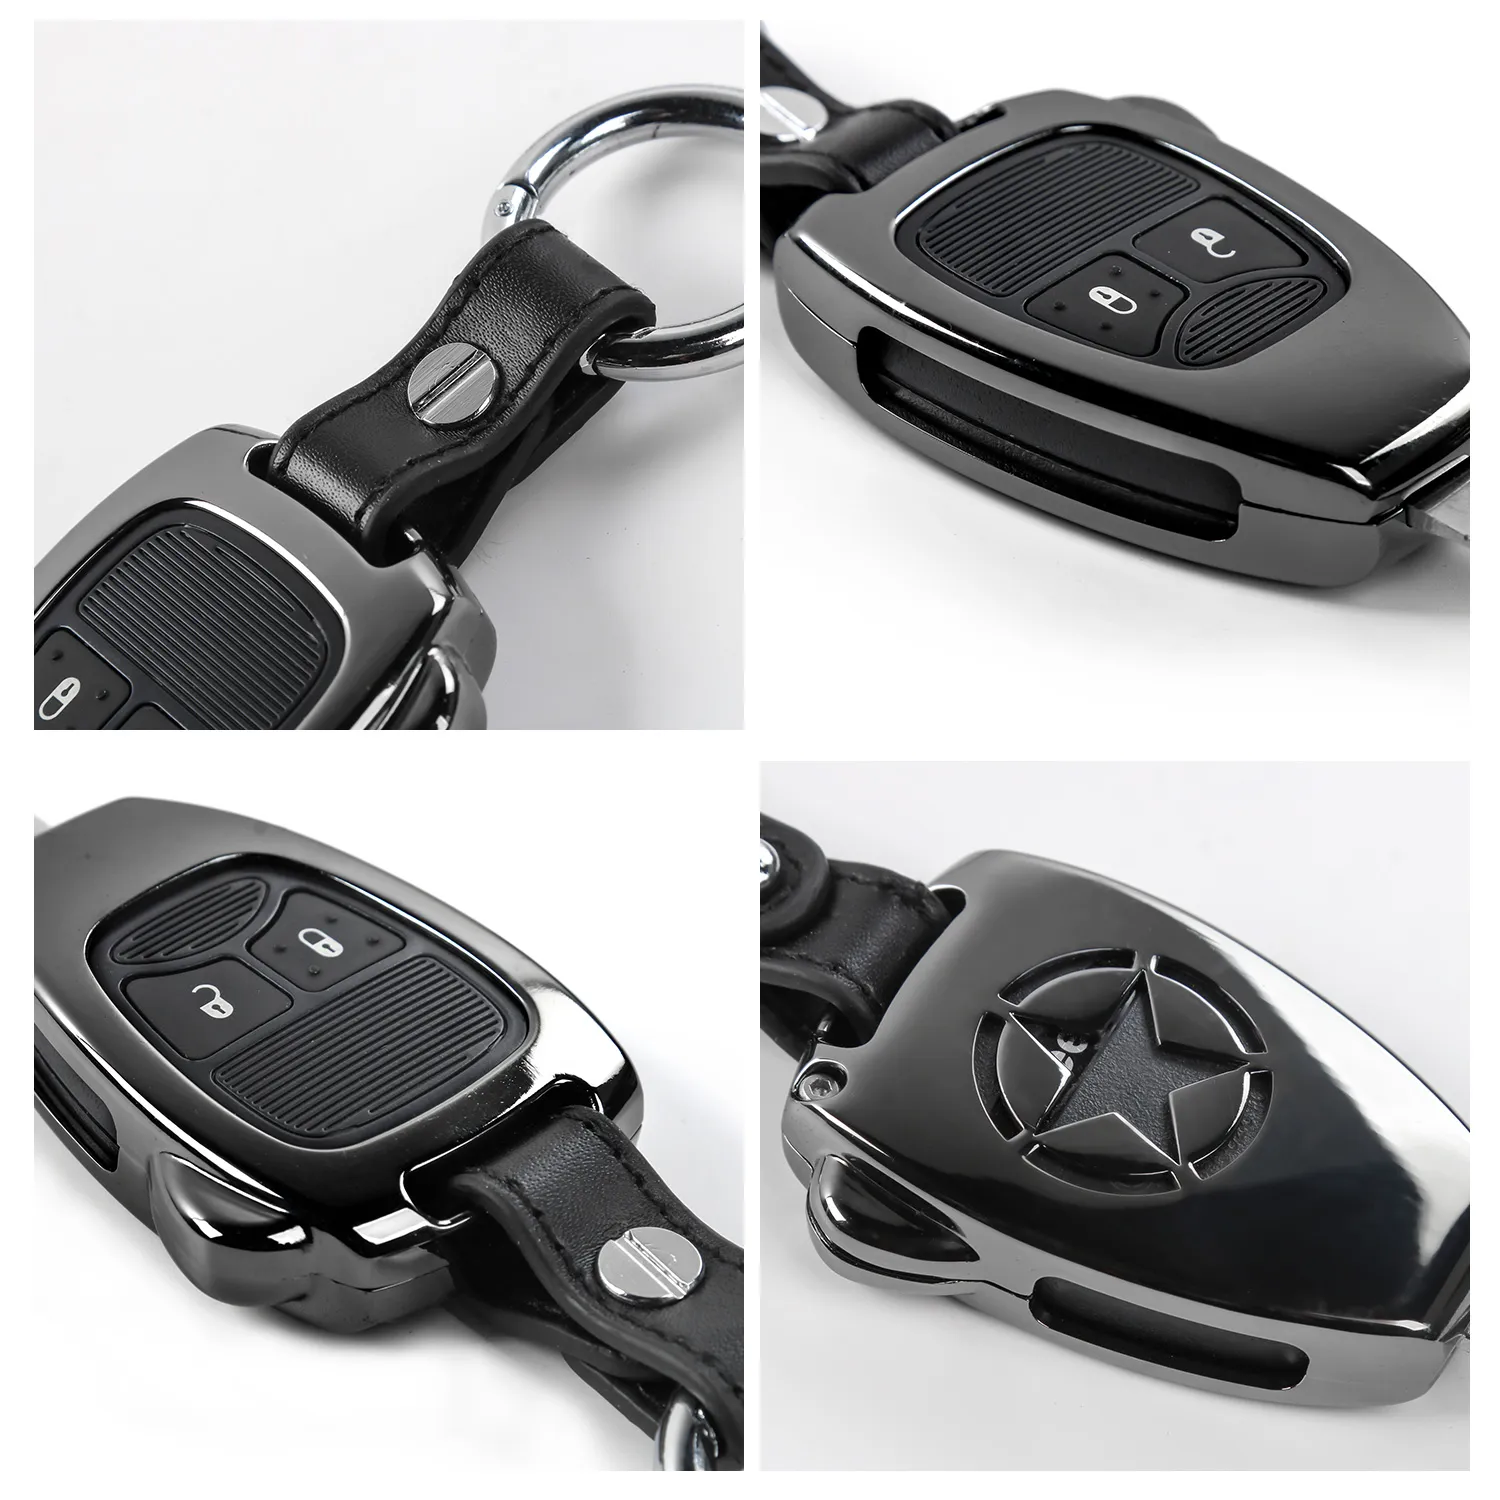 Handgefertigtes Leder-Autoschlüsseletui ist geeignet für Wrangler 2 4  Tasten Smart-Remote-Shell-Schlüsseletui, Schlüsselanhänger-Abdeckung -  .de